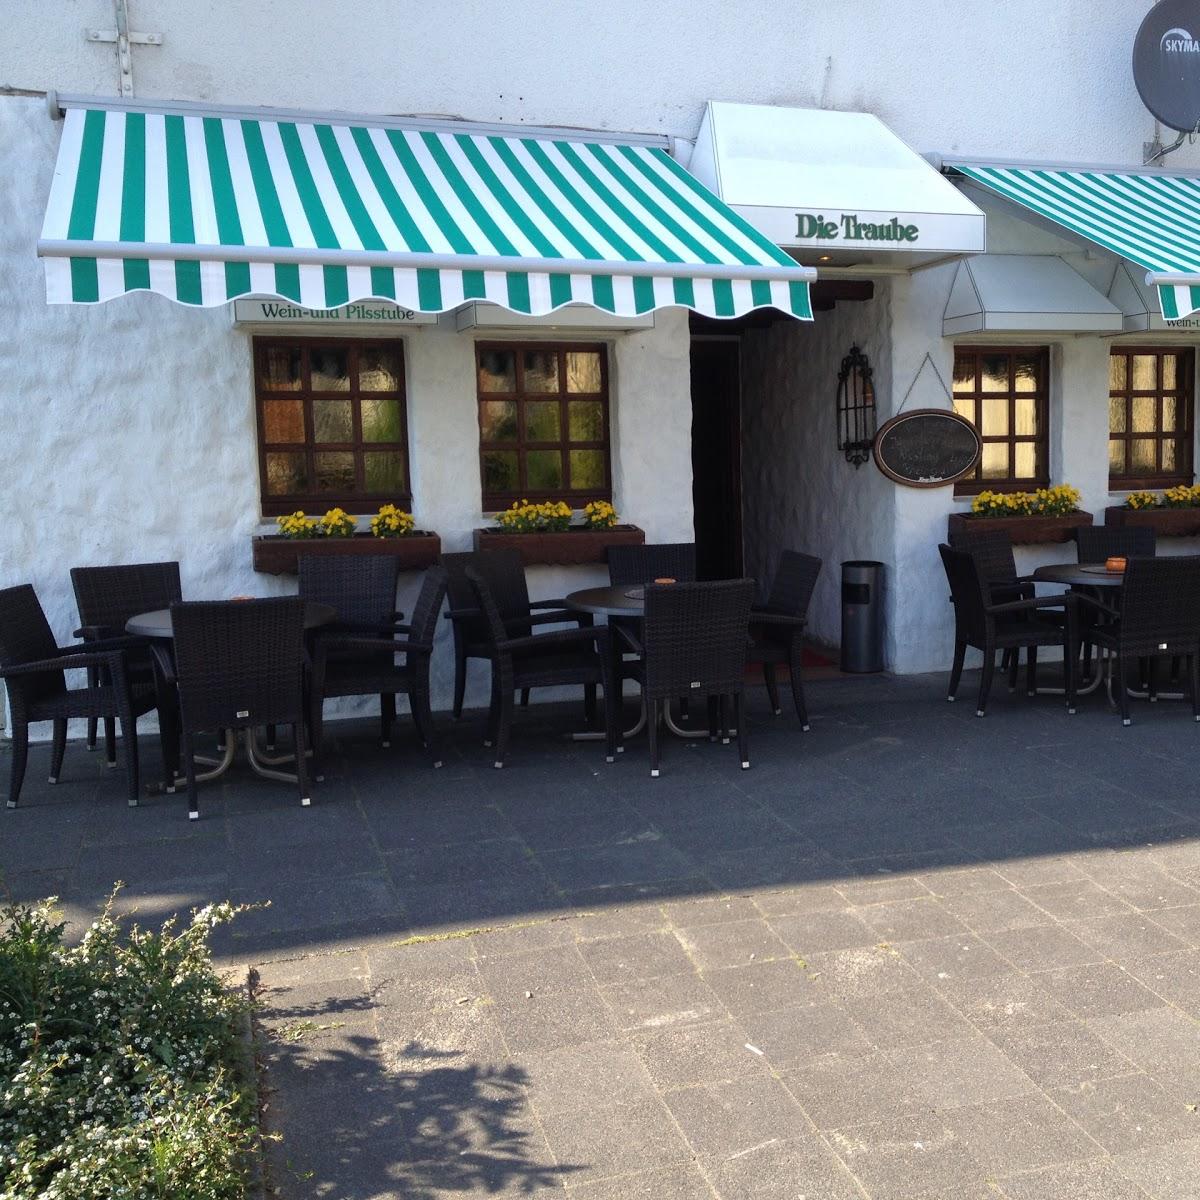 Restaurant "Die Traube" in Bad Oeynhausen